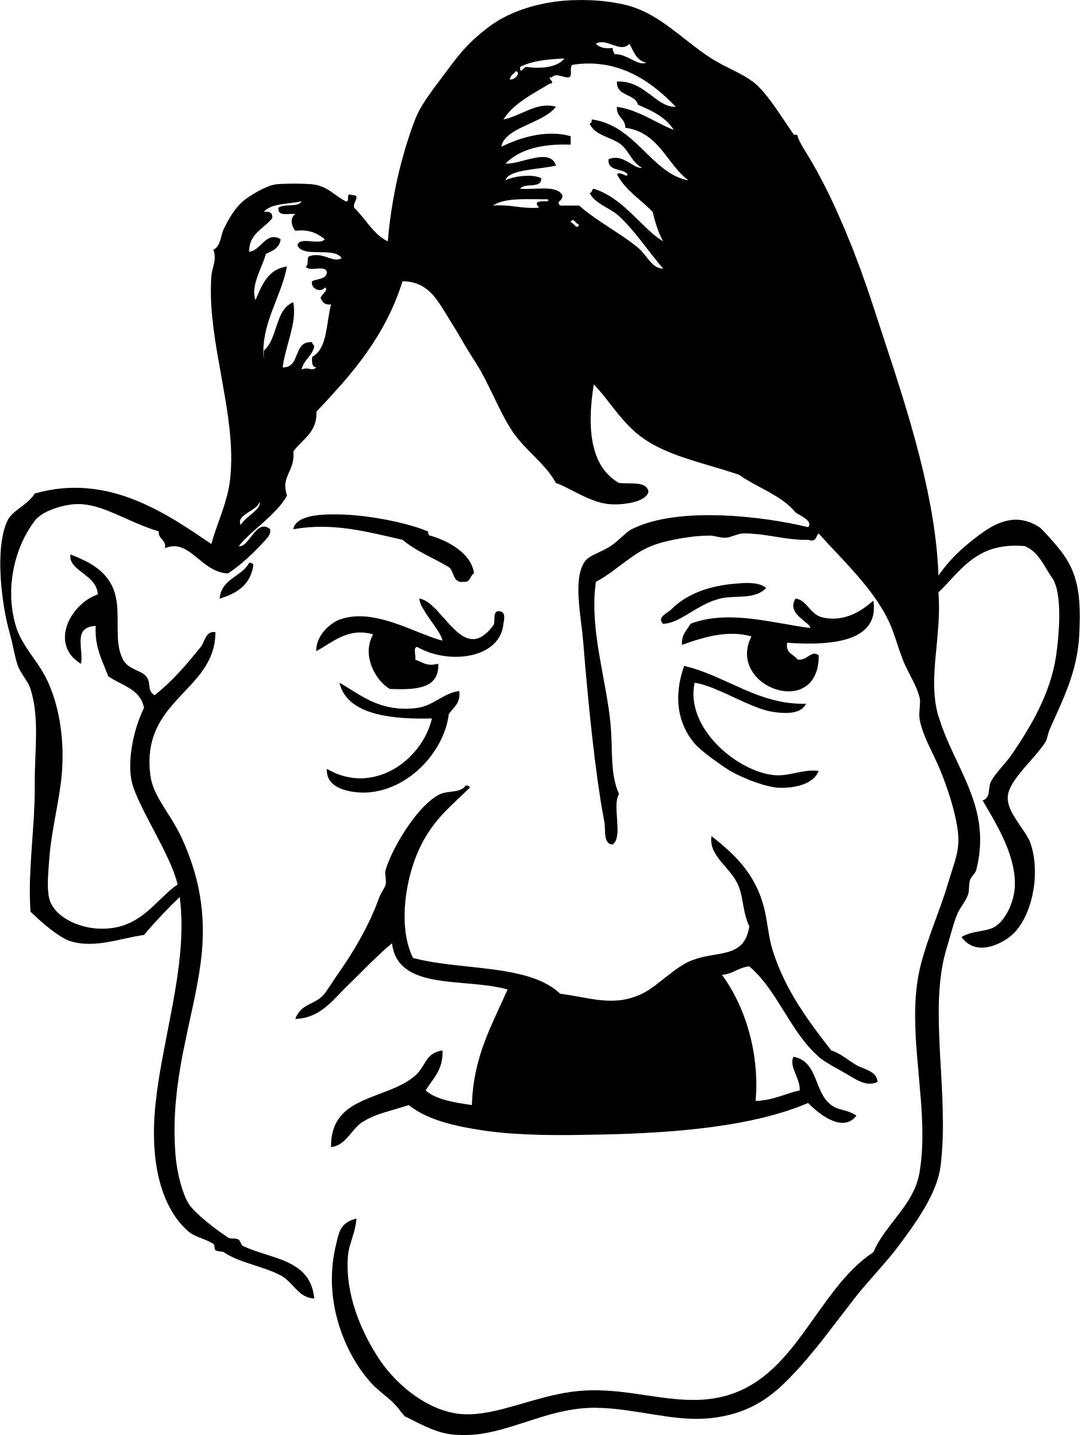 Adolf Hitler 2 png transparent